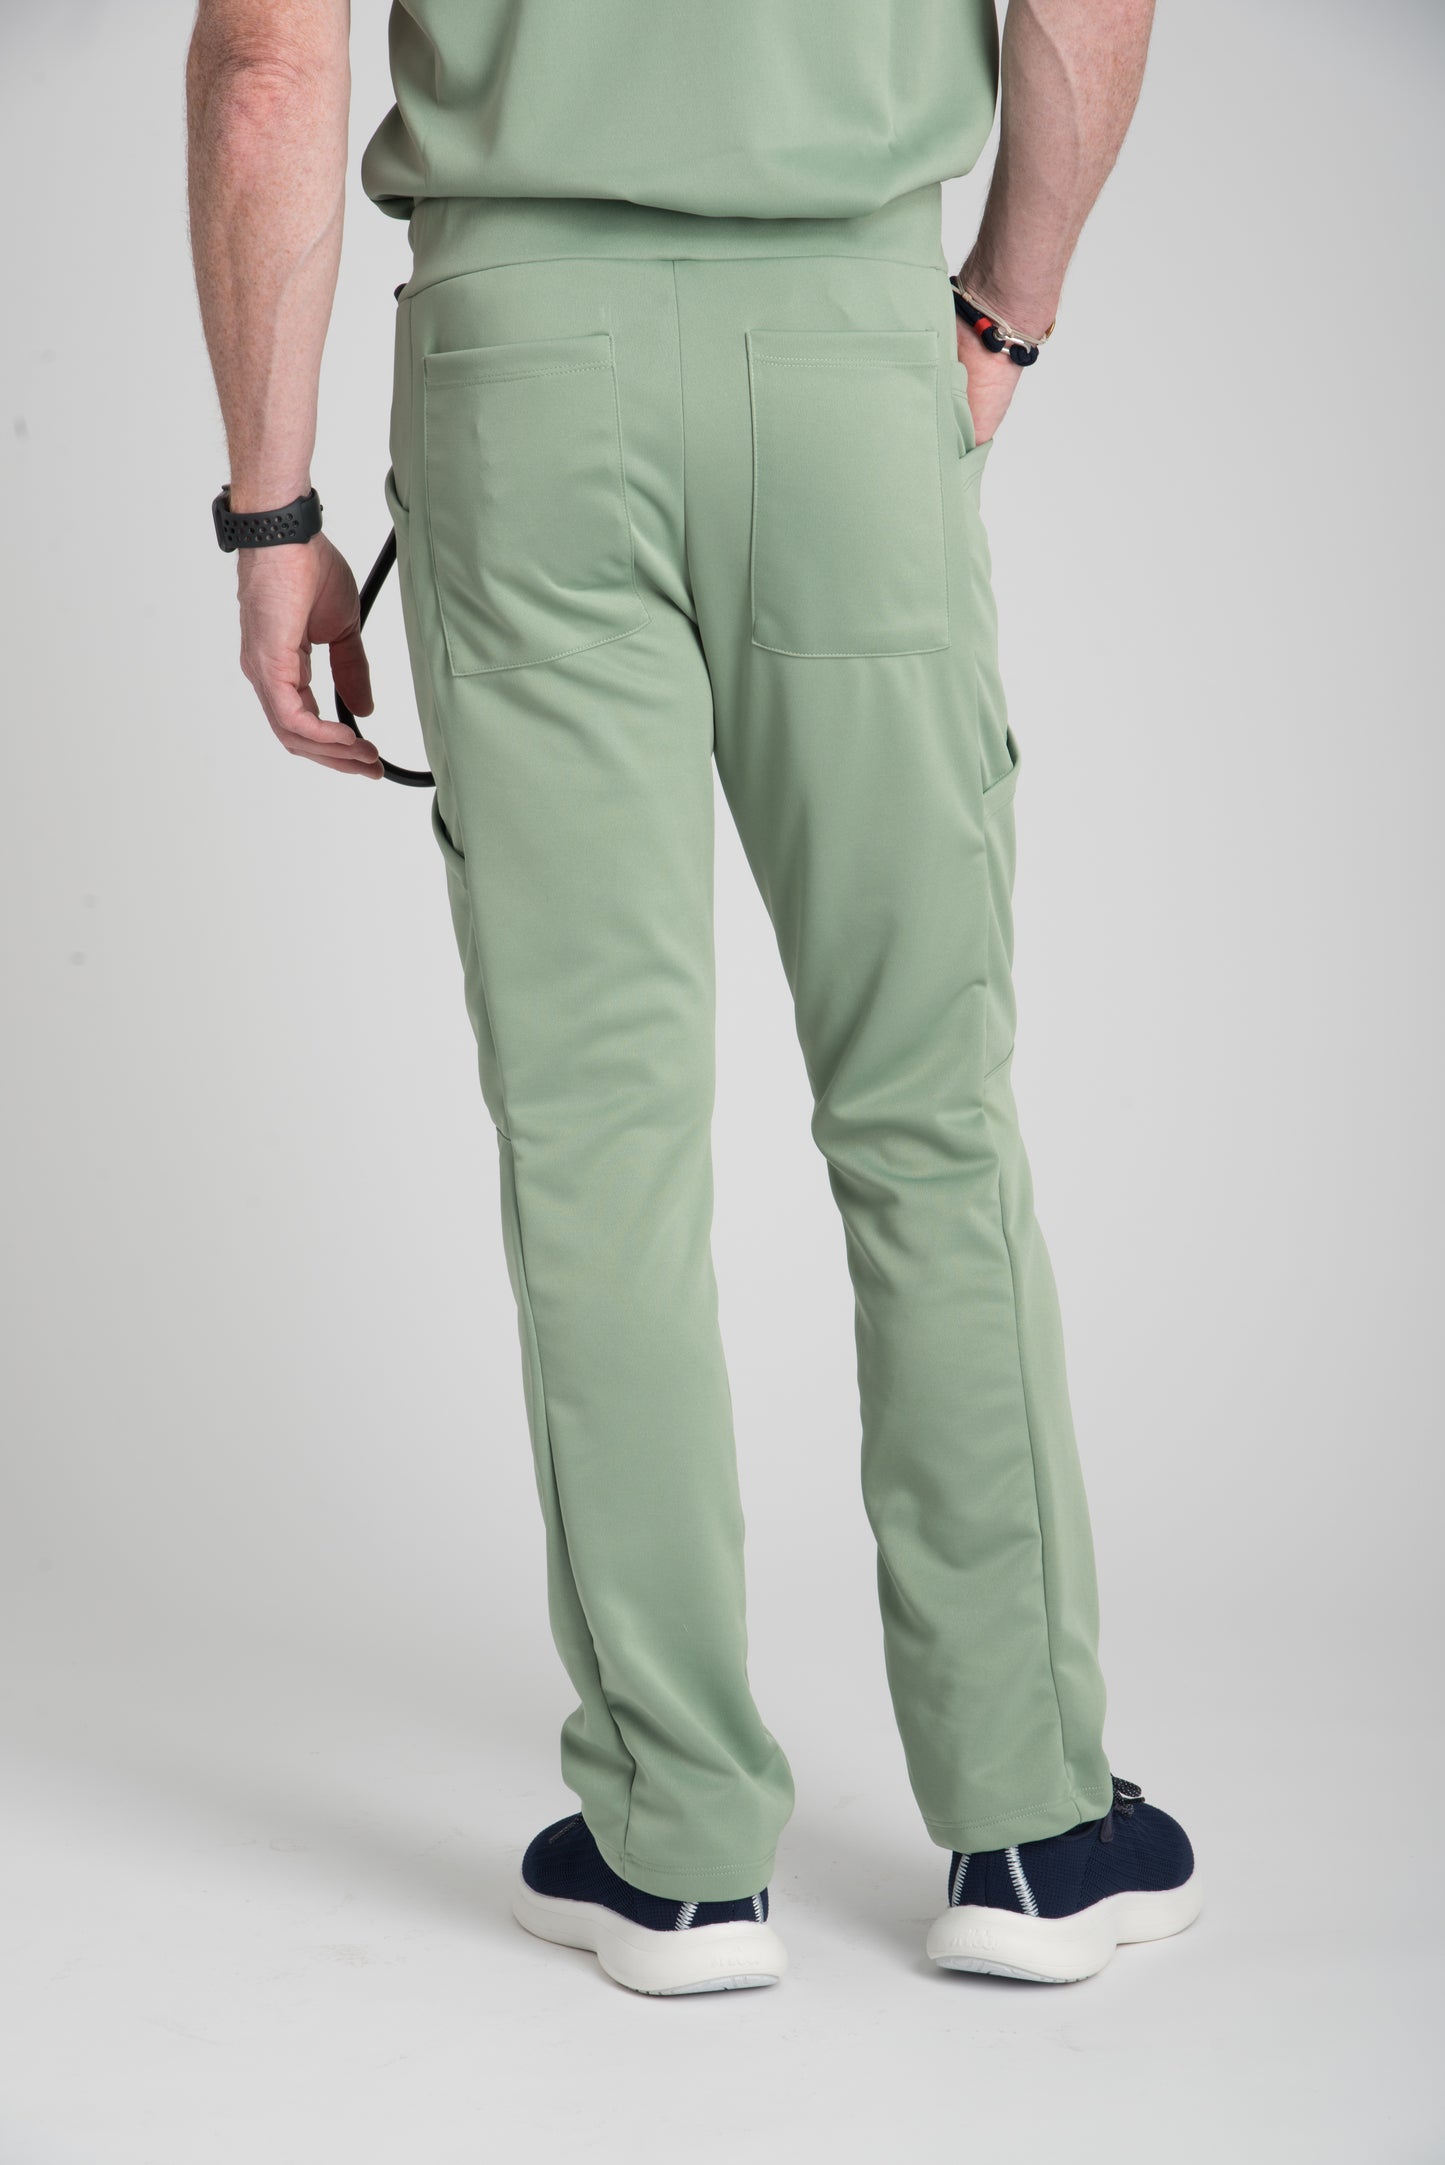 Men's Pants in Olive Green